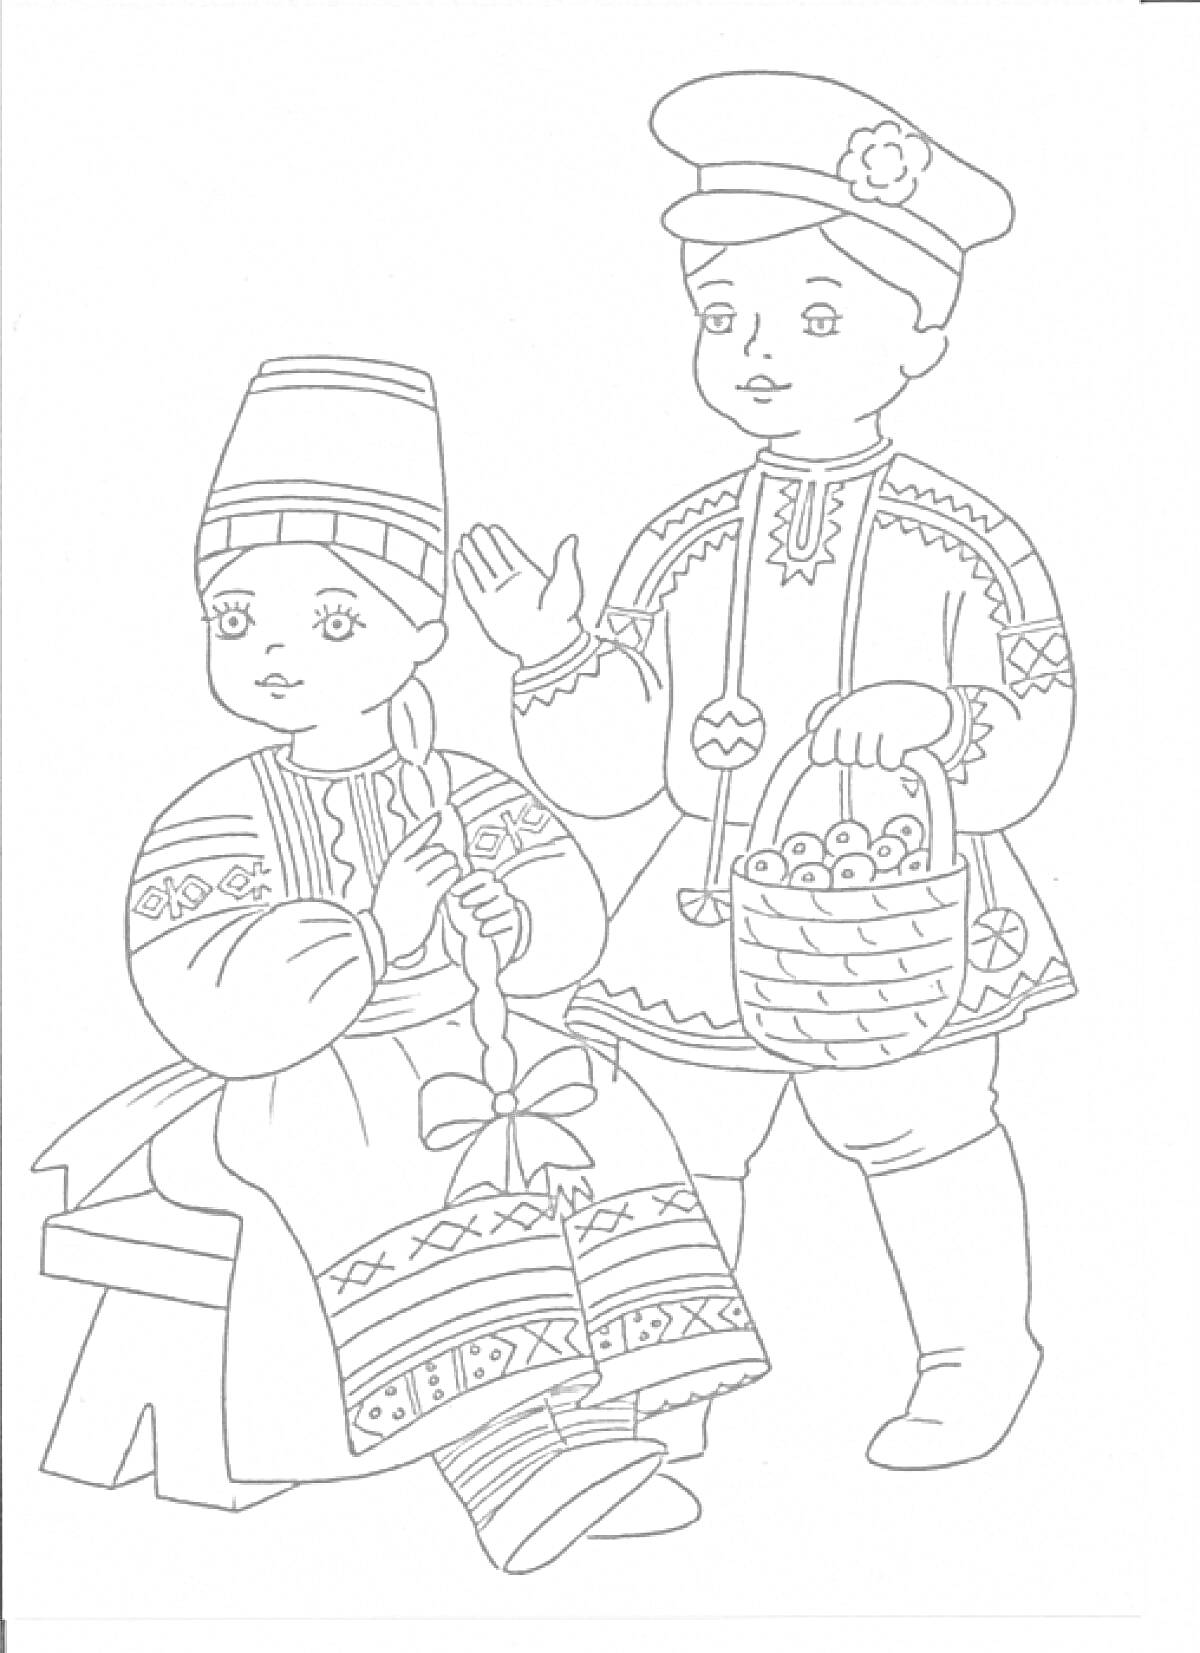 Девочка плетет косу, сидя на лавке, в традиционном русском народном костюме с кокошником и сарафаном с народными узорами, рядом стоит мальчик в рубашке и шапке с корзинкой